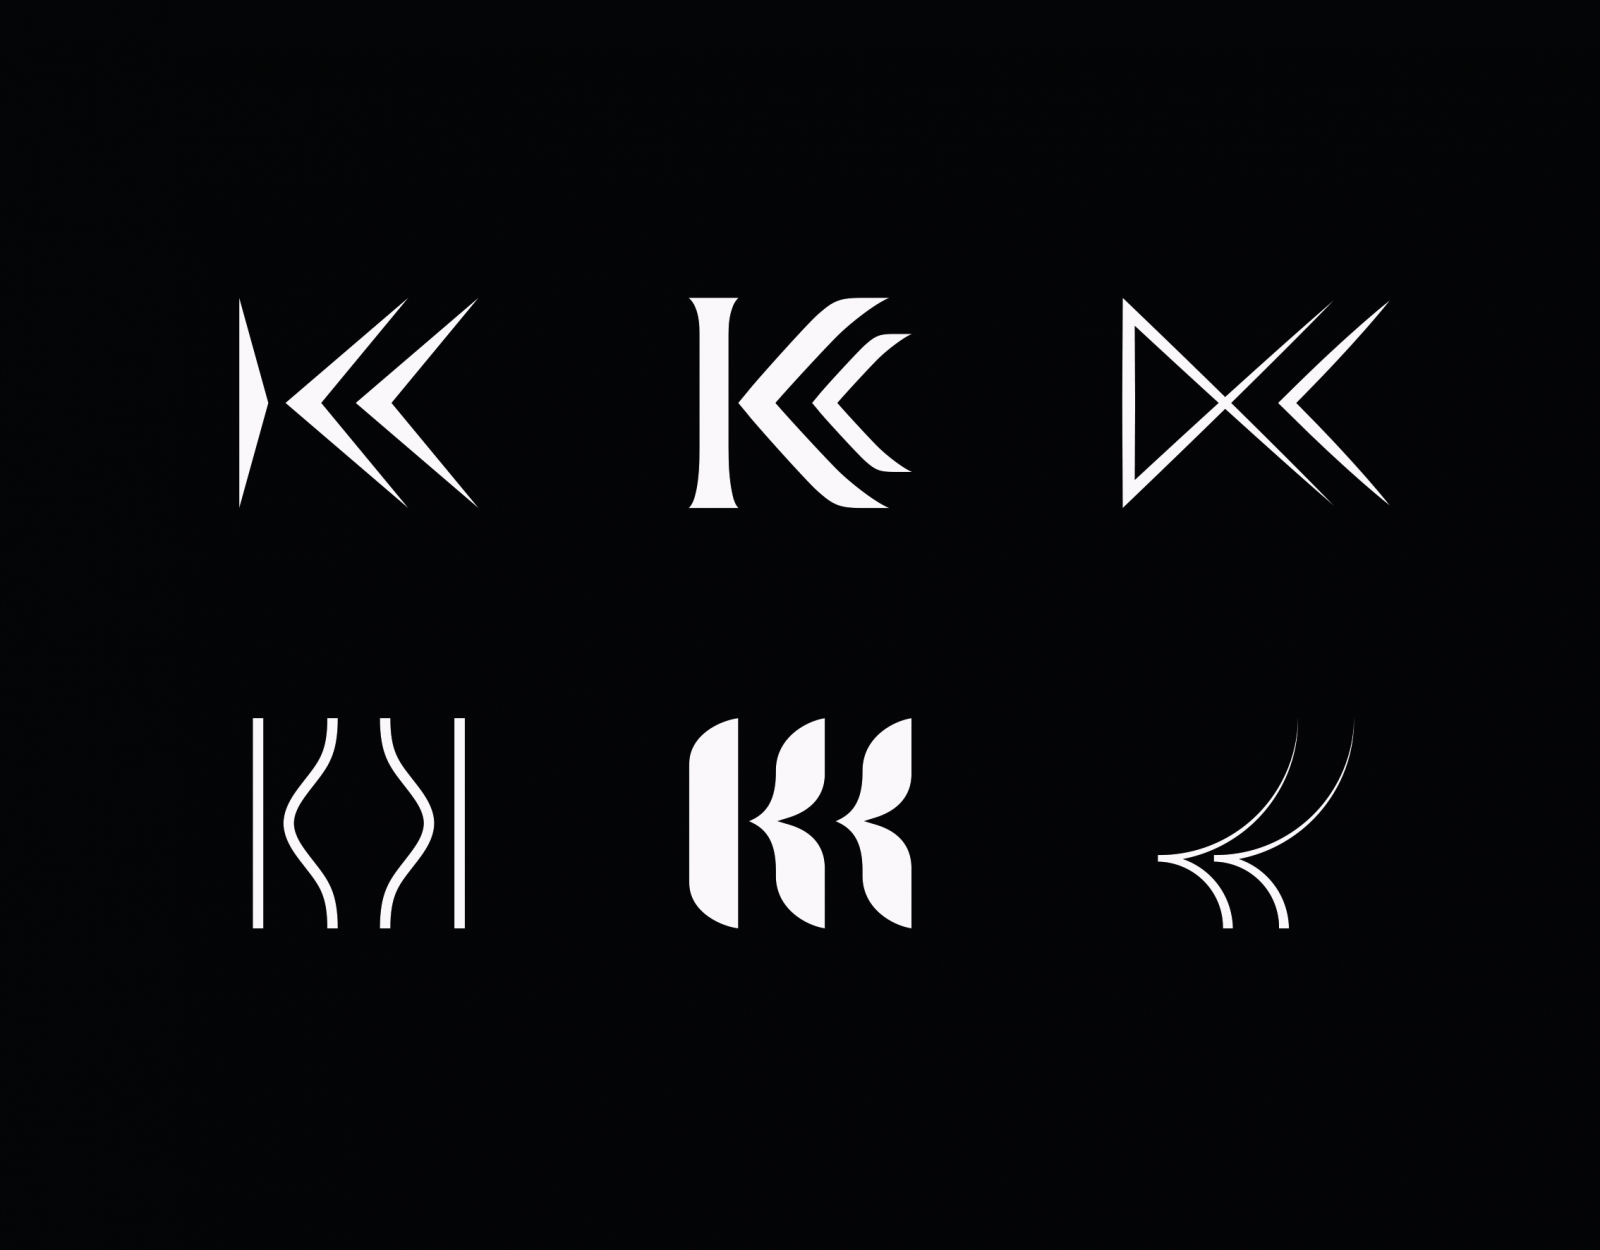 Killing Kittens logo development